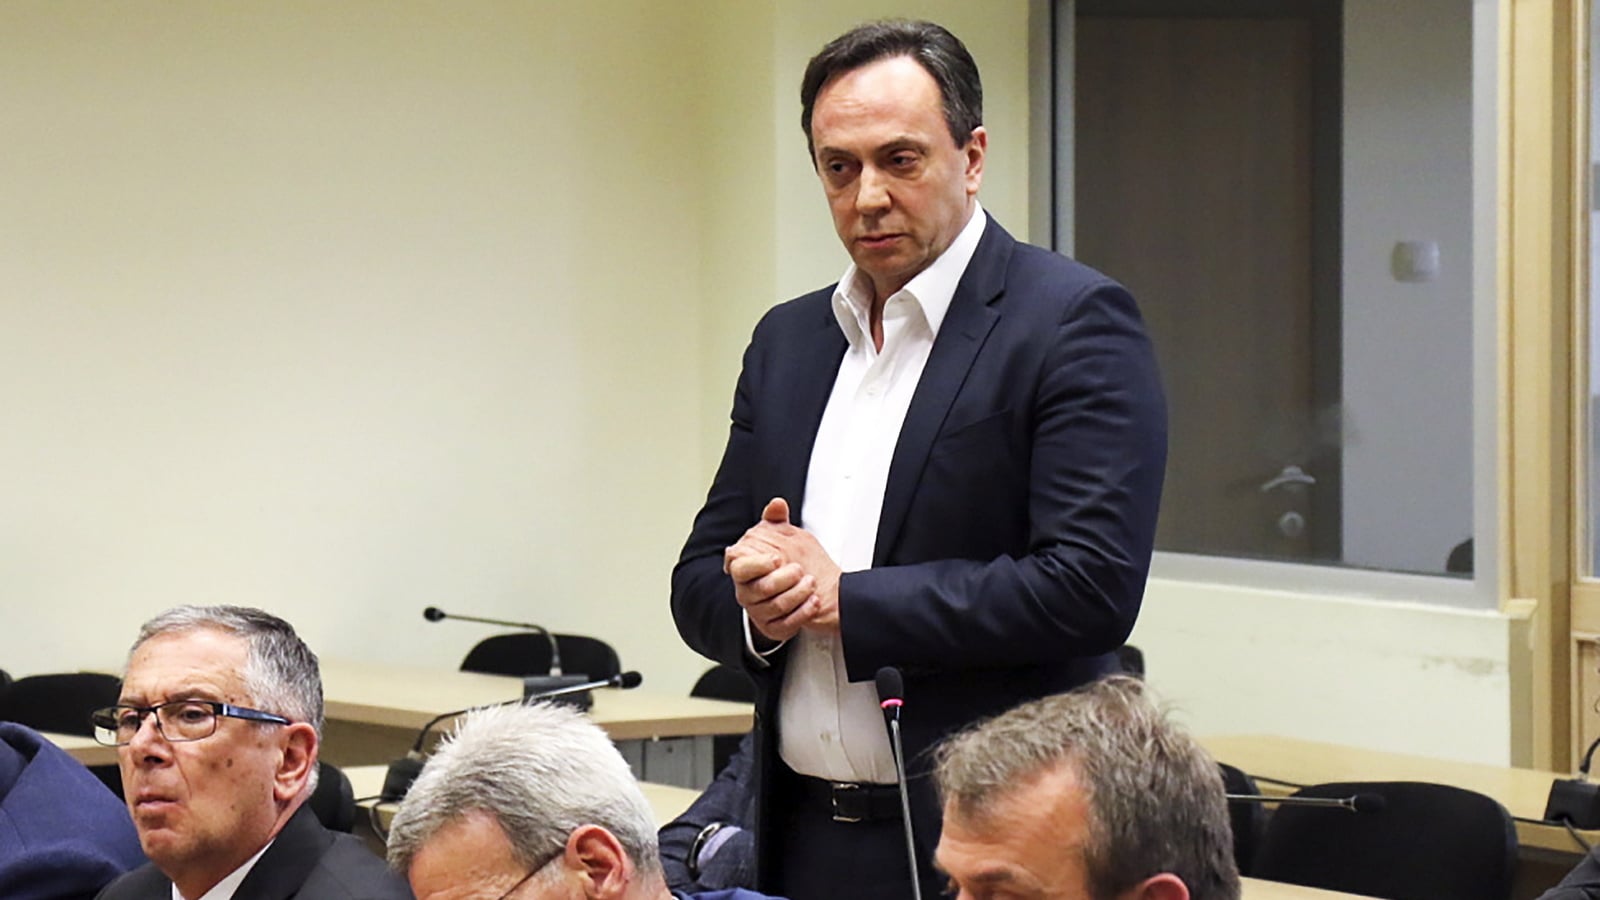 Gjashtë milionë euro të konfiskuara nga Sasho Mijallkov kanë hyrë në buxhetin e shtetit